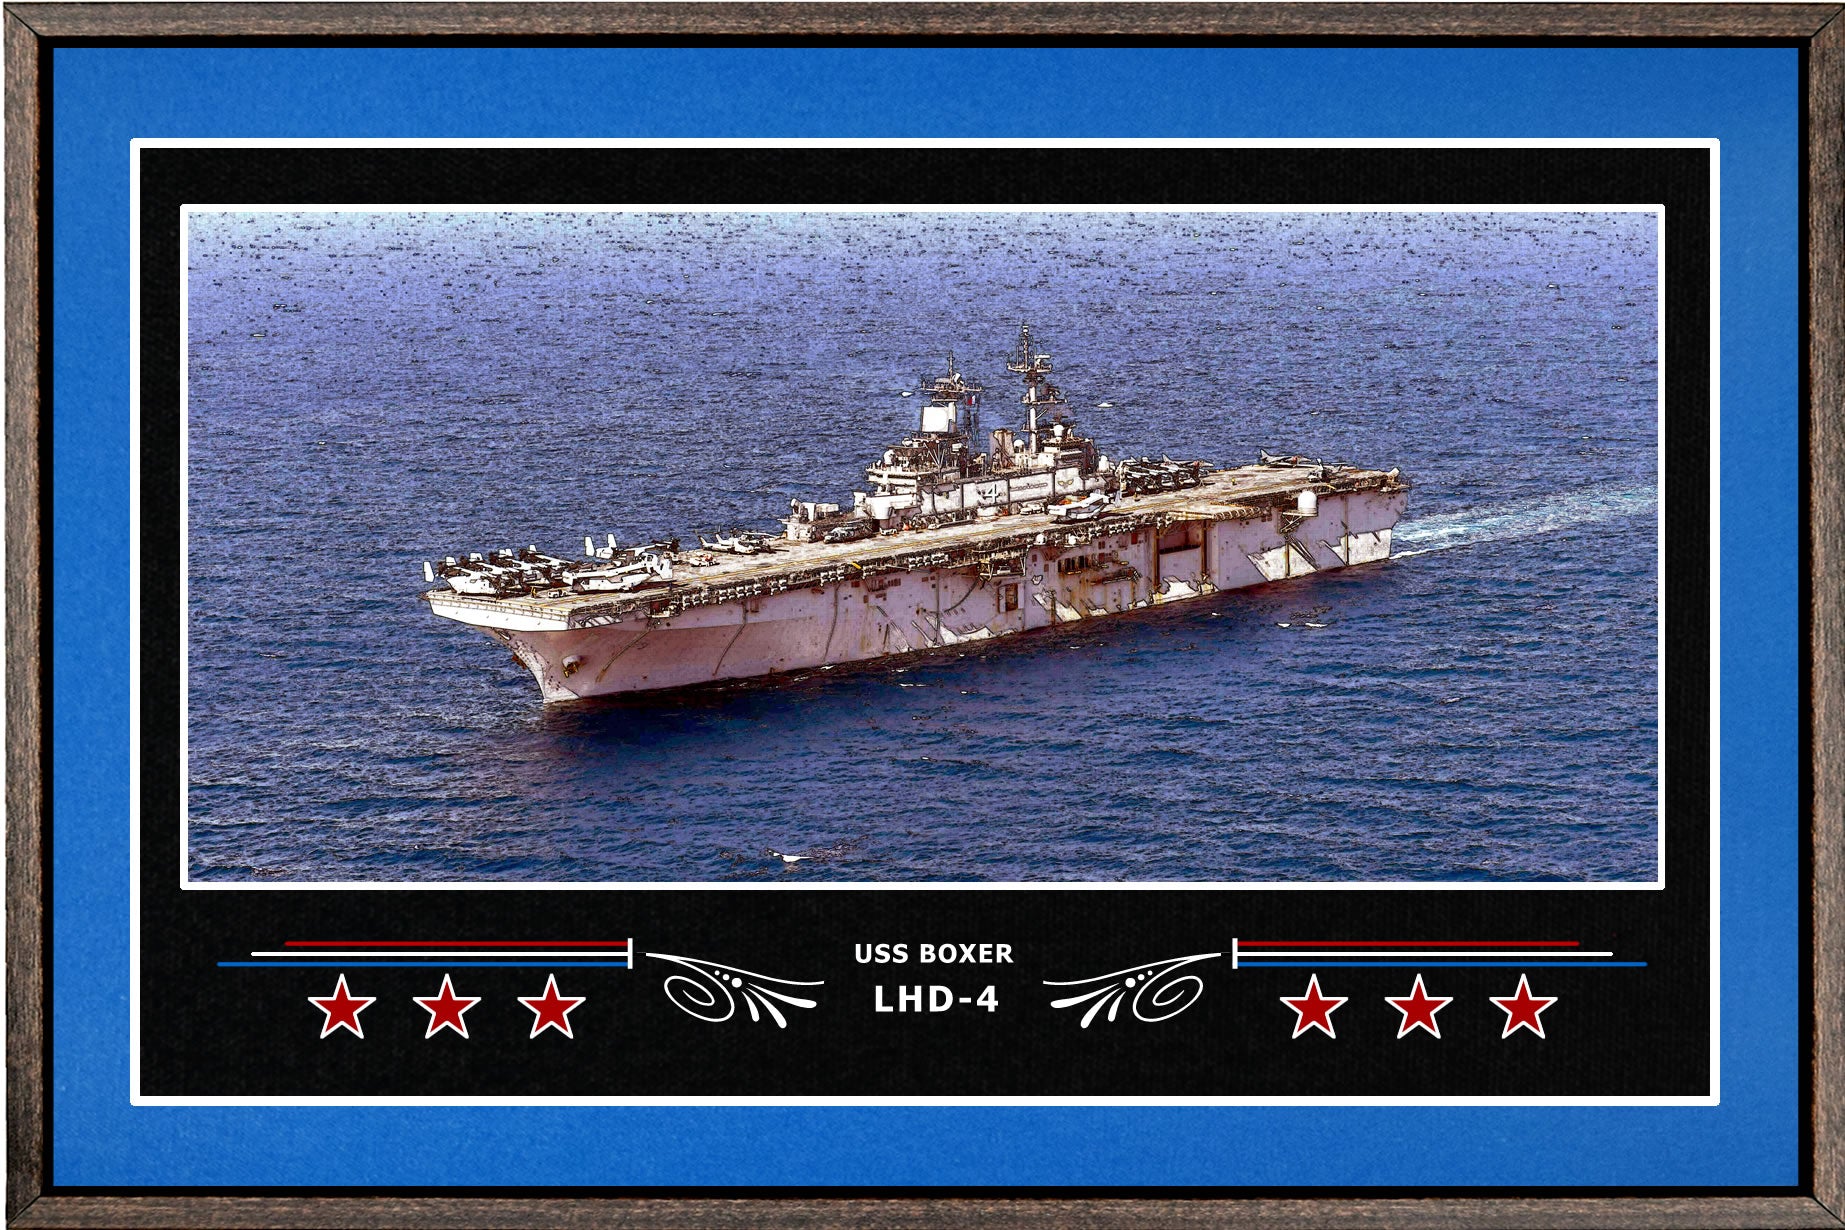 USS BOXER LHD 4 BOX FRAMED CANVAS ART BLUE